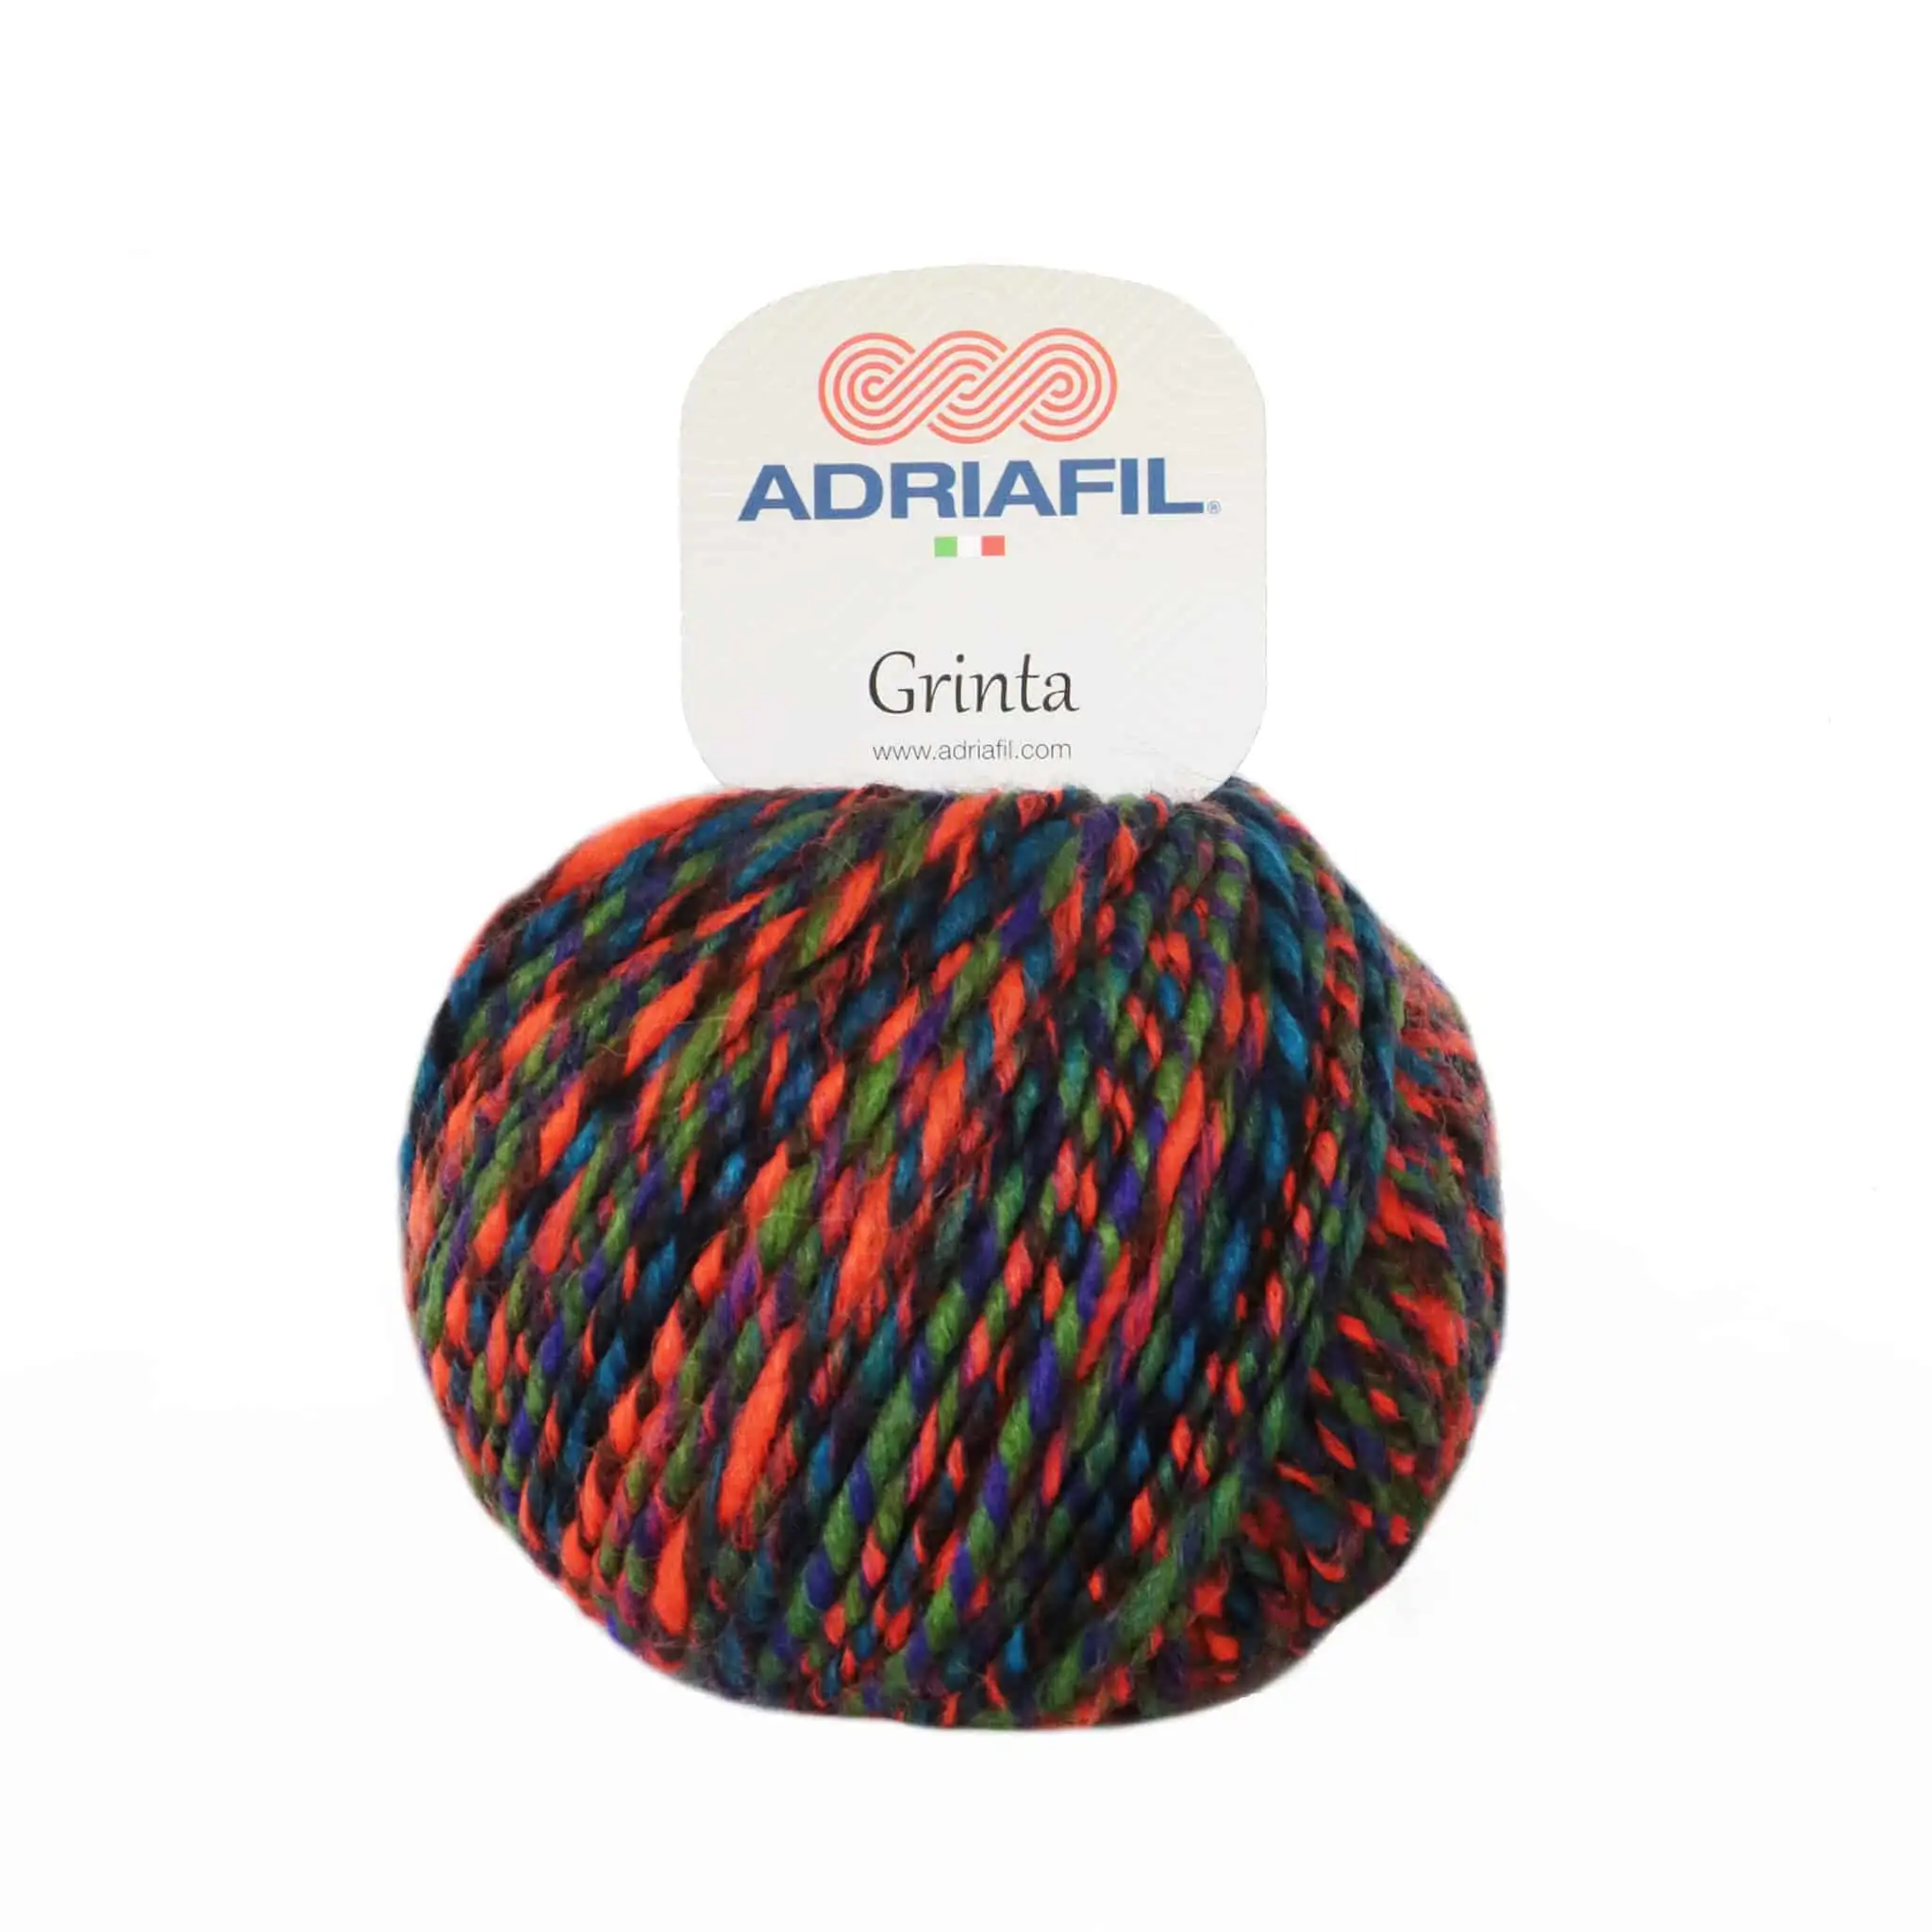 Yarn - Adriafil Grinta Aran / Chunky in Fluoro Orange 44